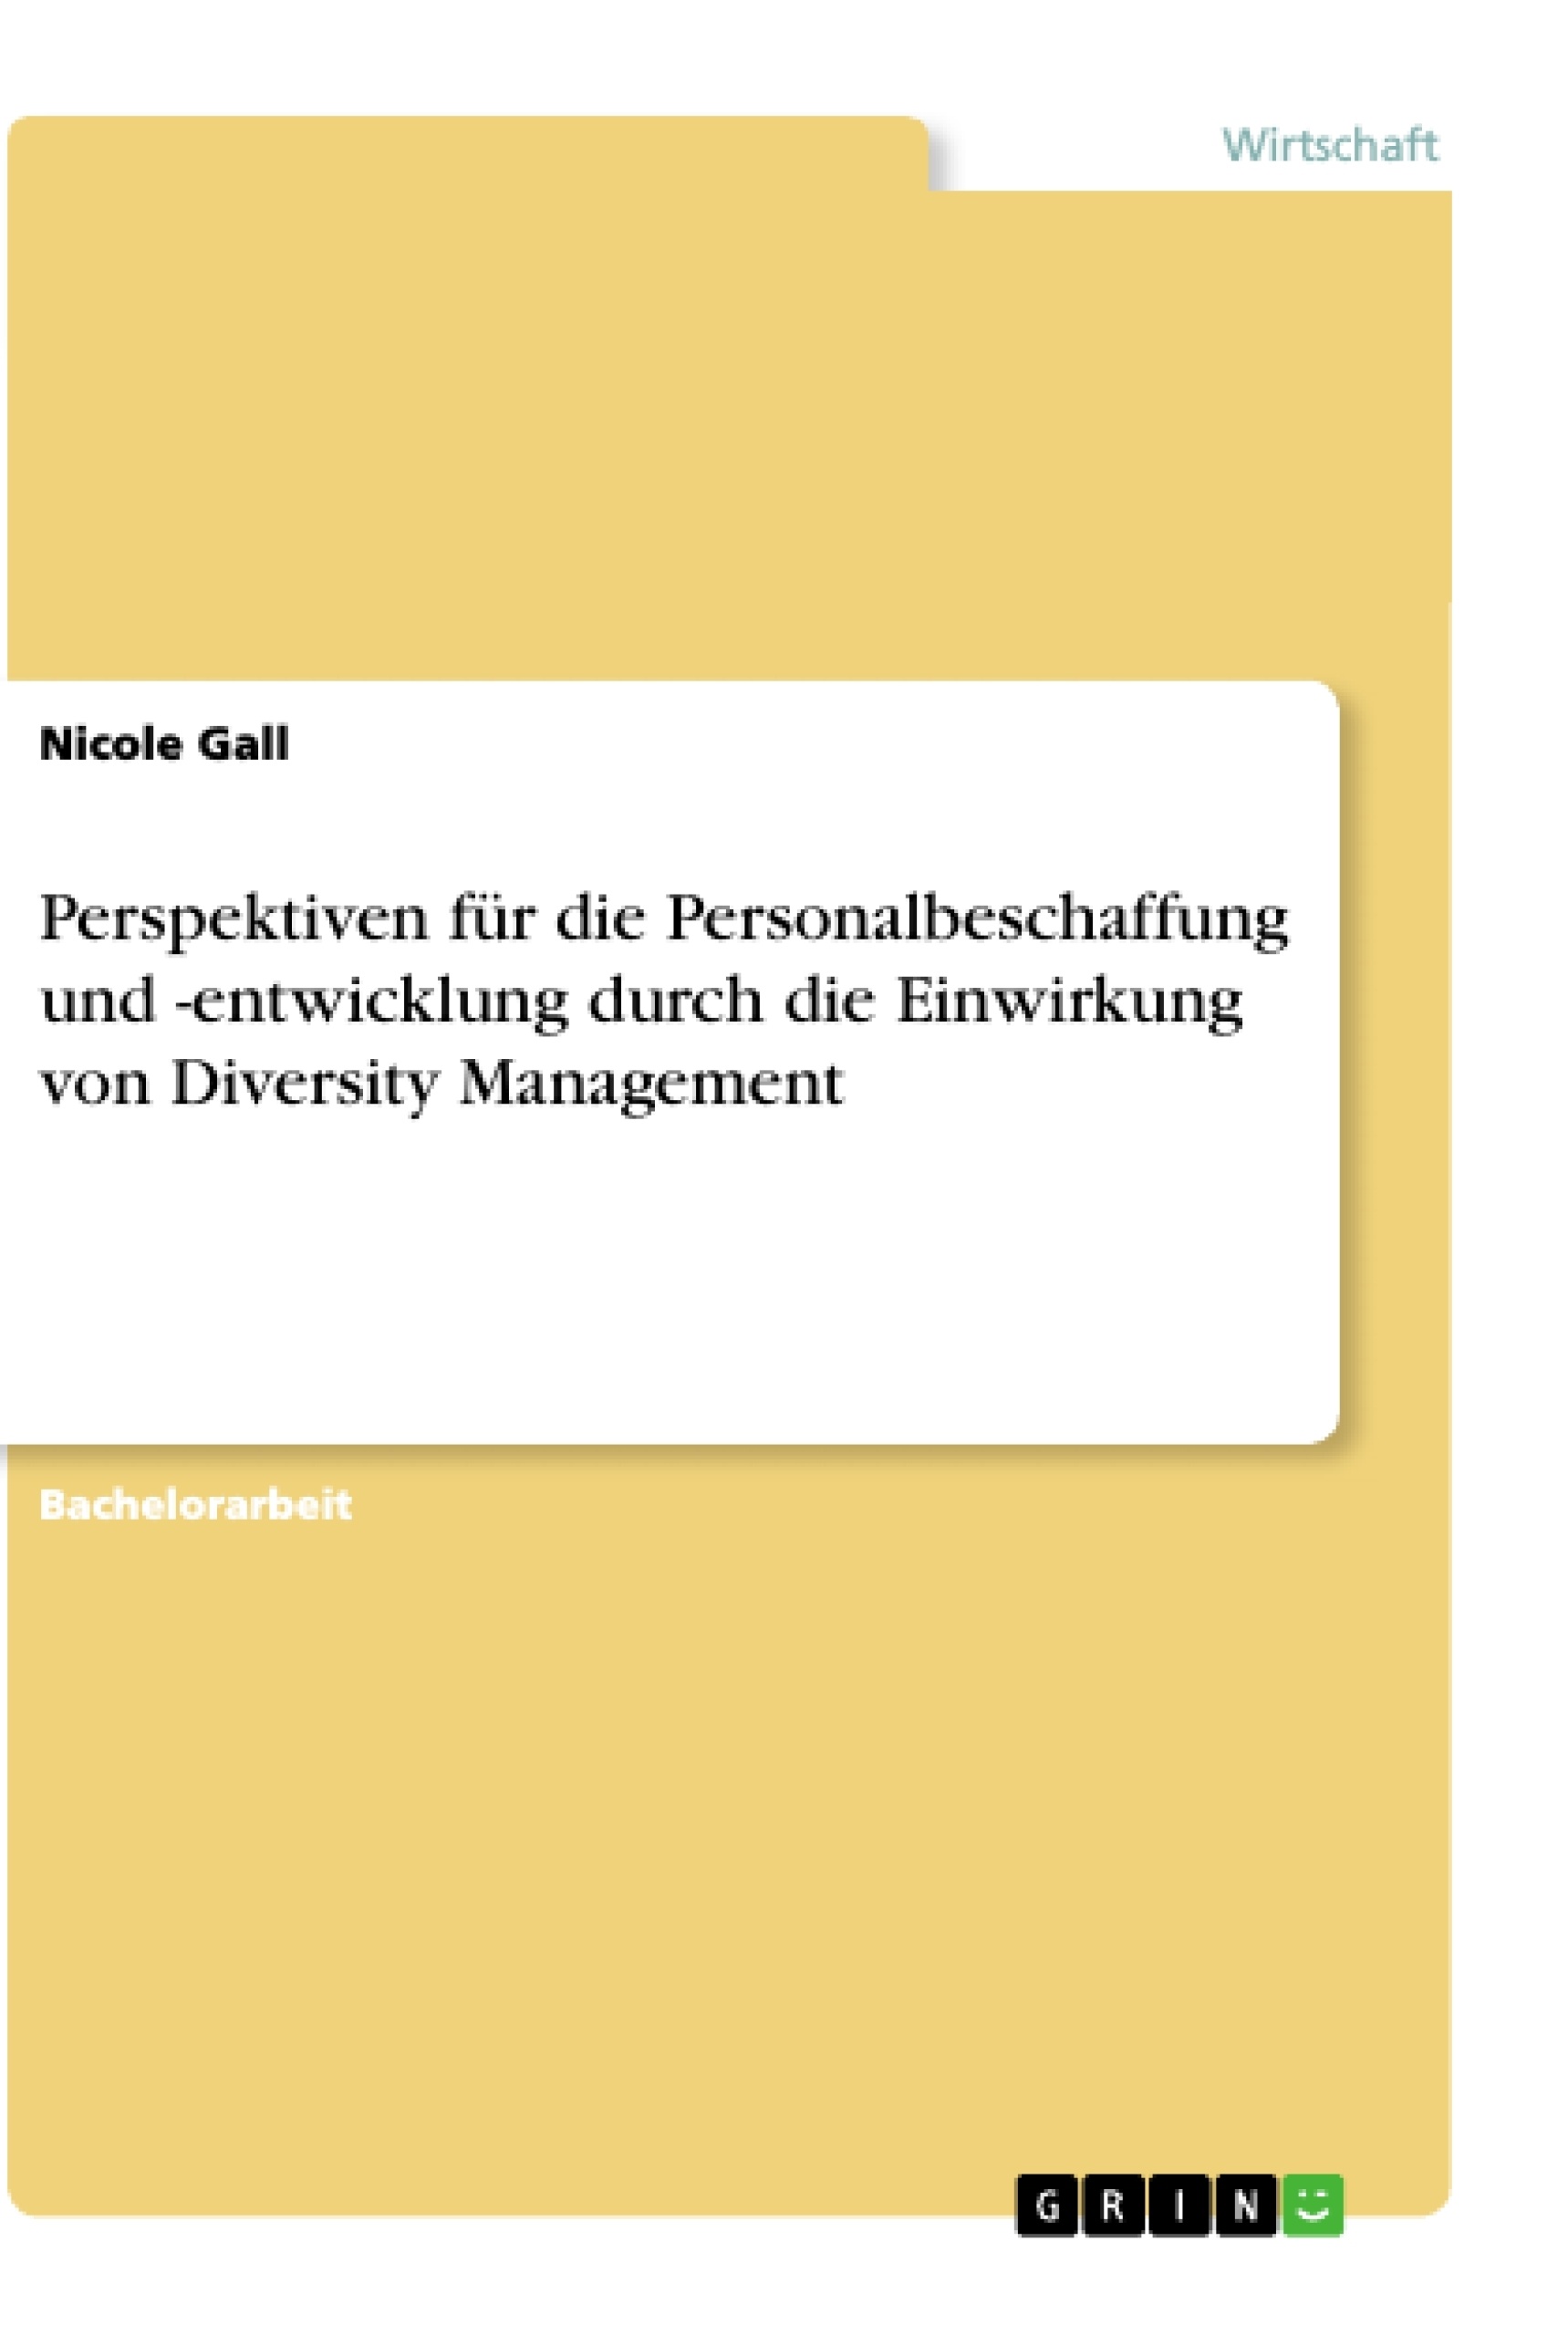 Title: Perspektiven für die Personalbeschaffung und -entwicklung durch die Einwirkung von Diversity Management